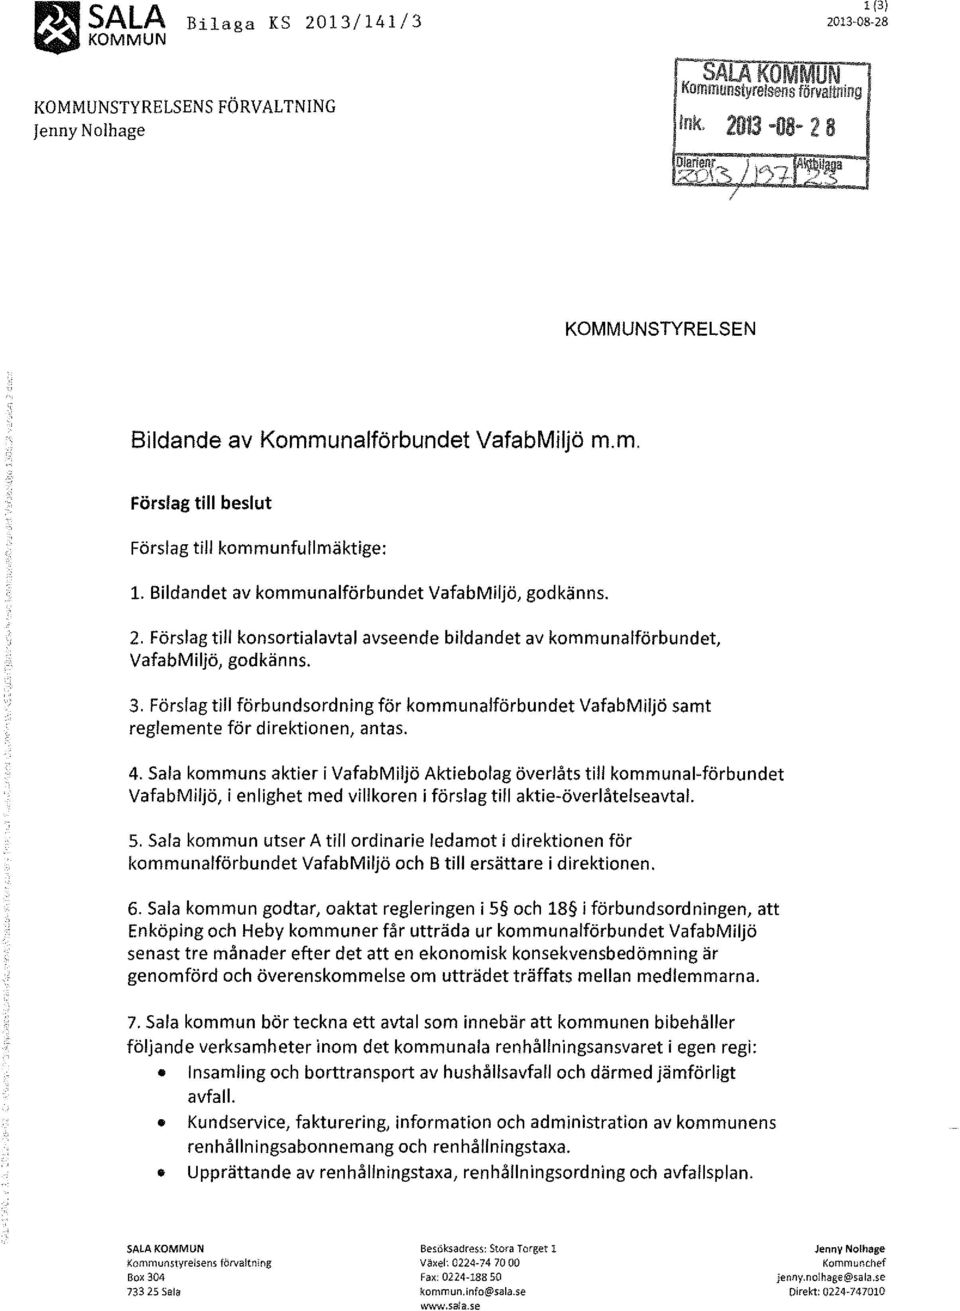 Förslag till konsortialavtal avseende bildandet av kommunalförbundet, VafabMiljö, godkänns. 3. Förslag till förbundsordning för kommunalförbundet VafabMiljö samt reglemente för direktionen, antas. 4.